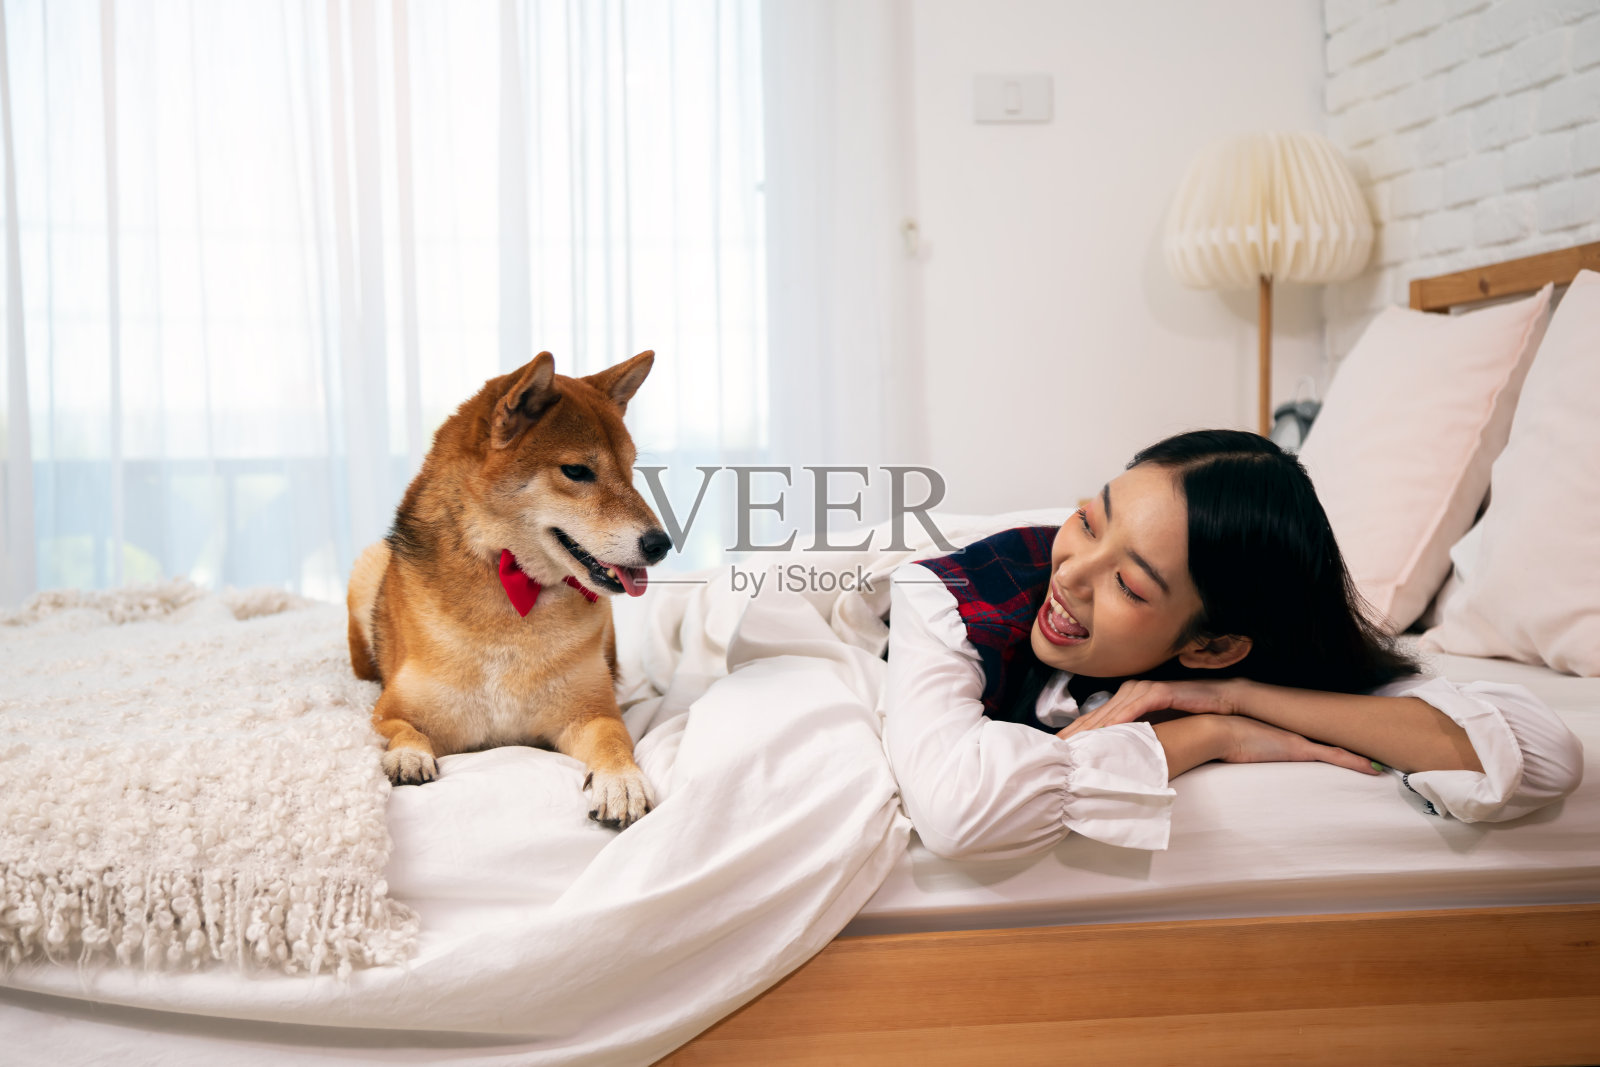 年轻漂亮的亚洲女人与柴犬躺在床上;柴犬是世界闻名的日本犬种照片摄影图片